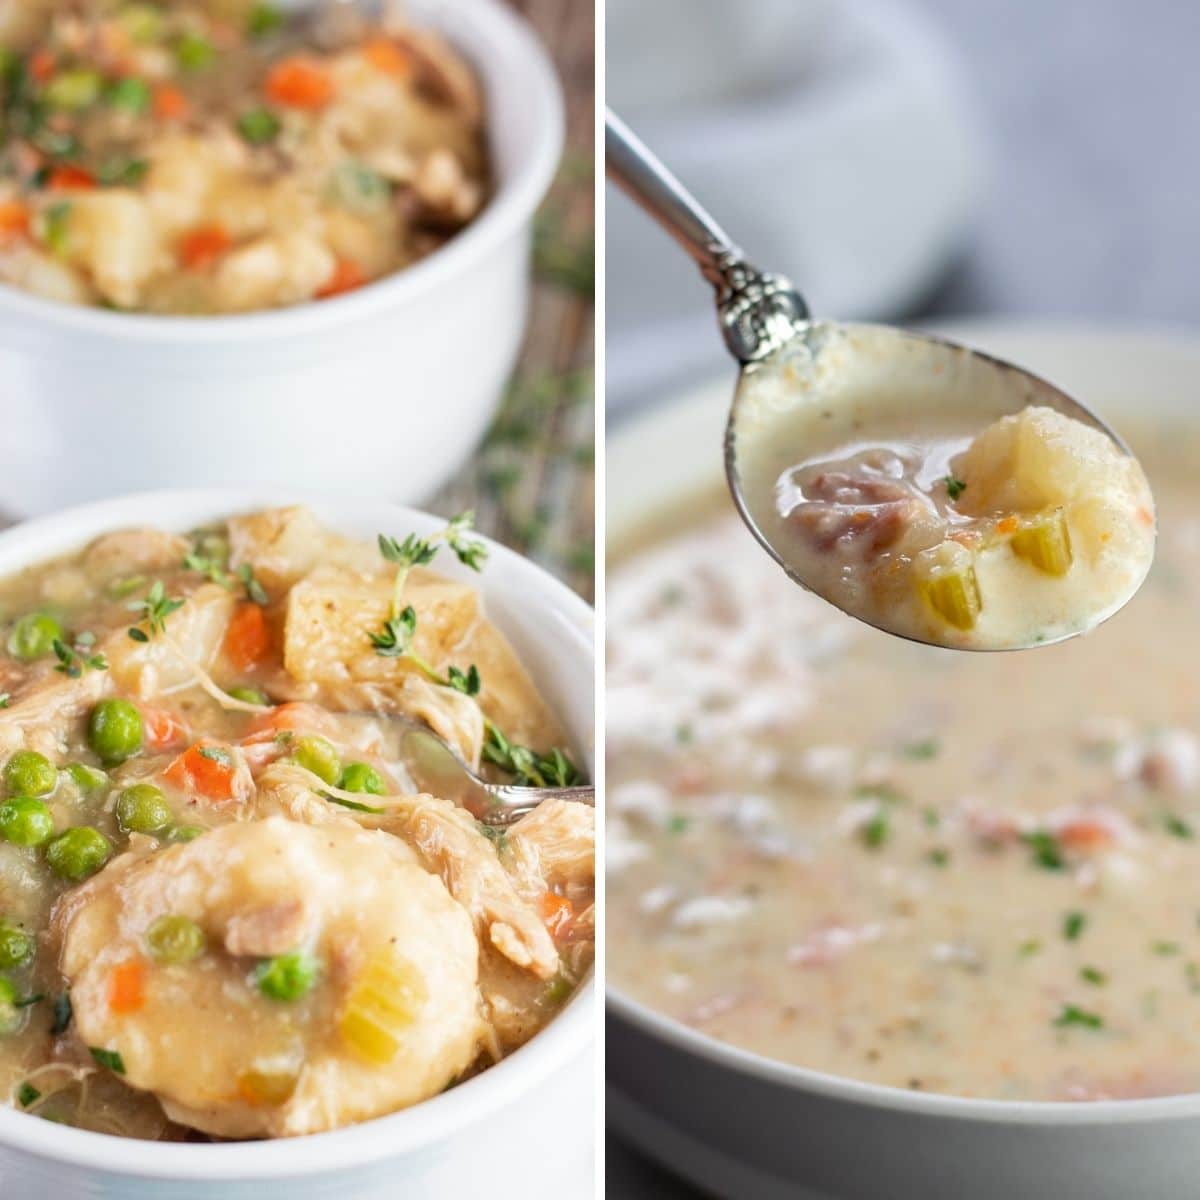 Meilleures recettes de soupe à la mijoteuse avec 2 photos de collage d'images de soupes servies dans des bols blancs.